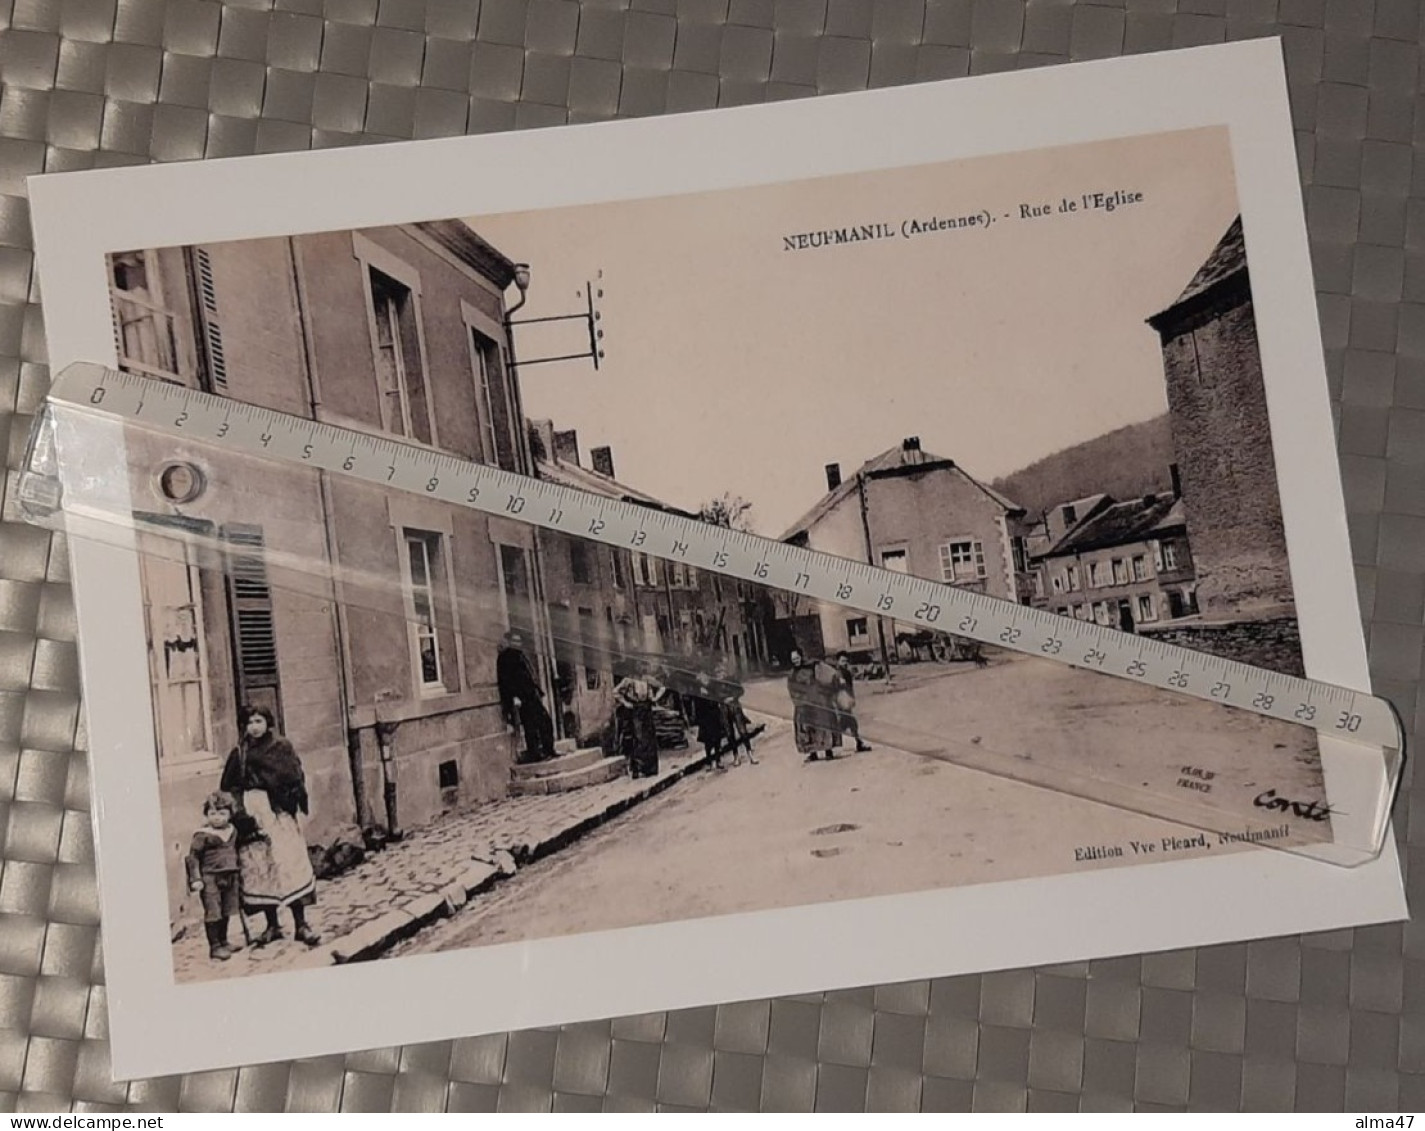 Neufmanil (France Ardennes) - Reproduction Photo A4 Plastifiée - Collection D'expositions - Rue De L'église Très Animée - Places